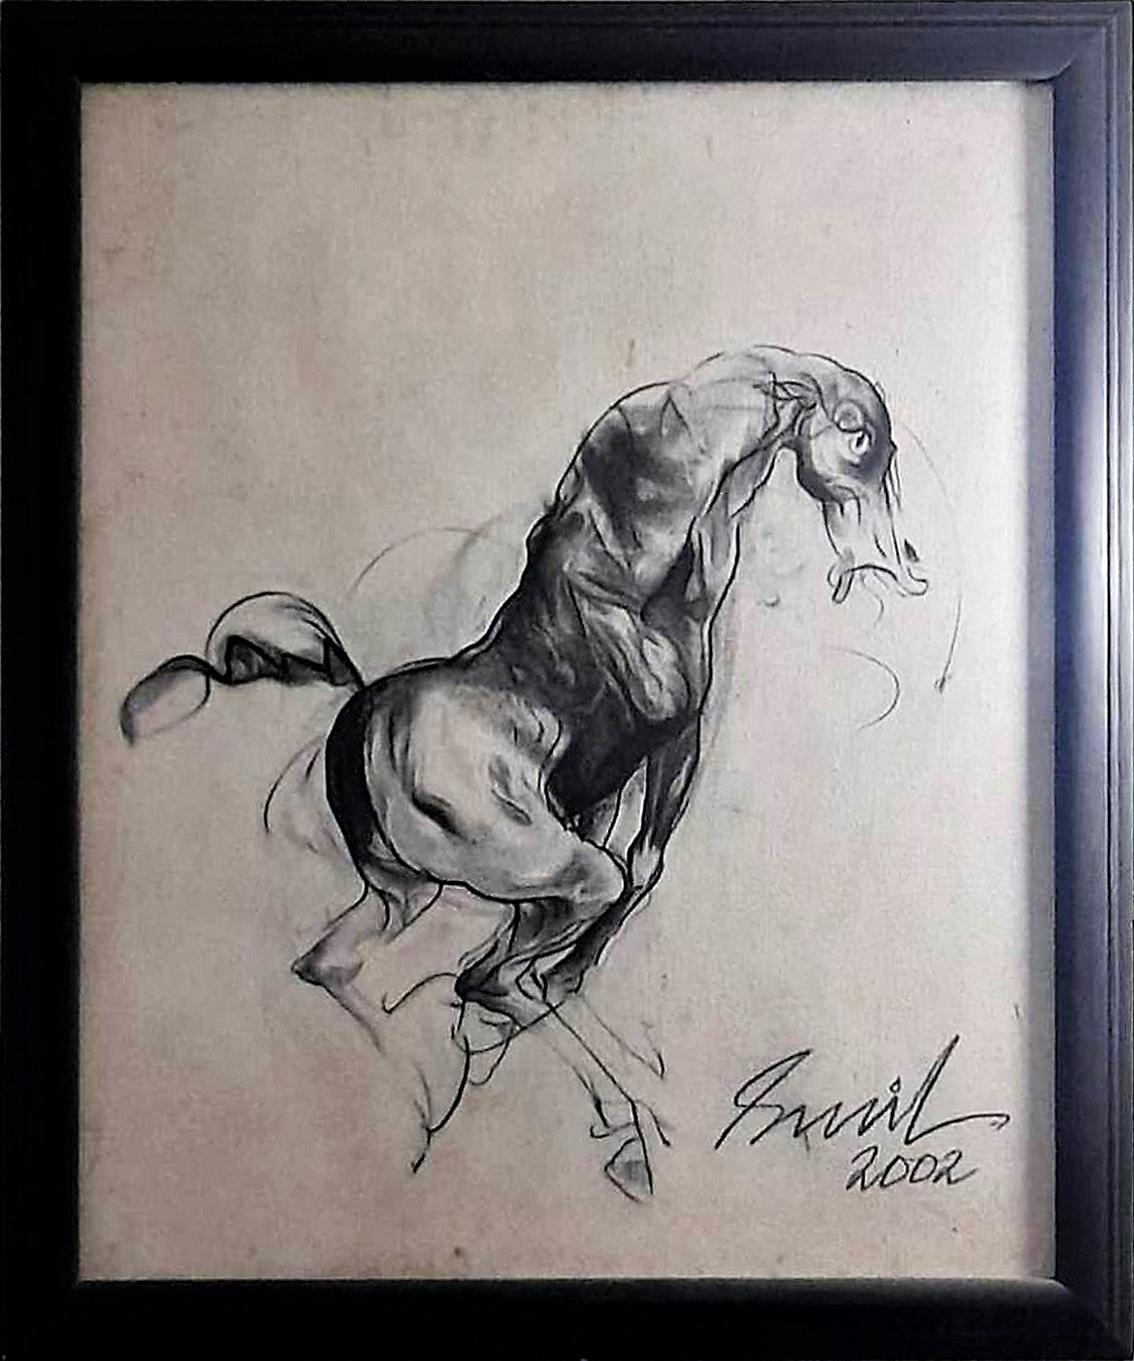 Sunil Das - Pferd, 
36 x 30 Zoll Ungerahmte Formate
Zeichenkohle auf Leinwand, 2002
( Ungerahmt & Geliefert )

Sunil Das (1939-2015) war ein moderner indischer Meisterkünstler aus Bengalen. Sunil Das, der schon während seiner Studienzeit sehr